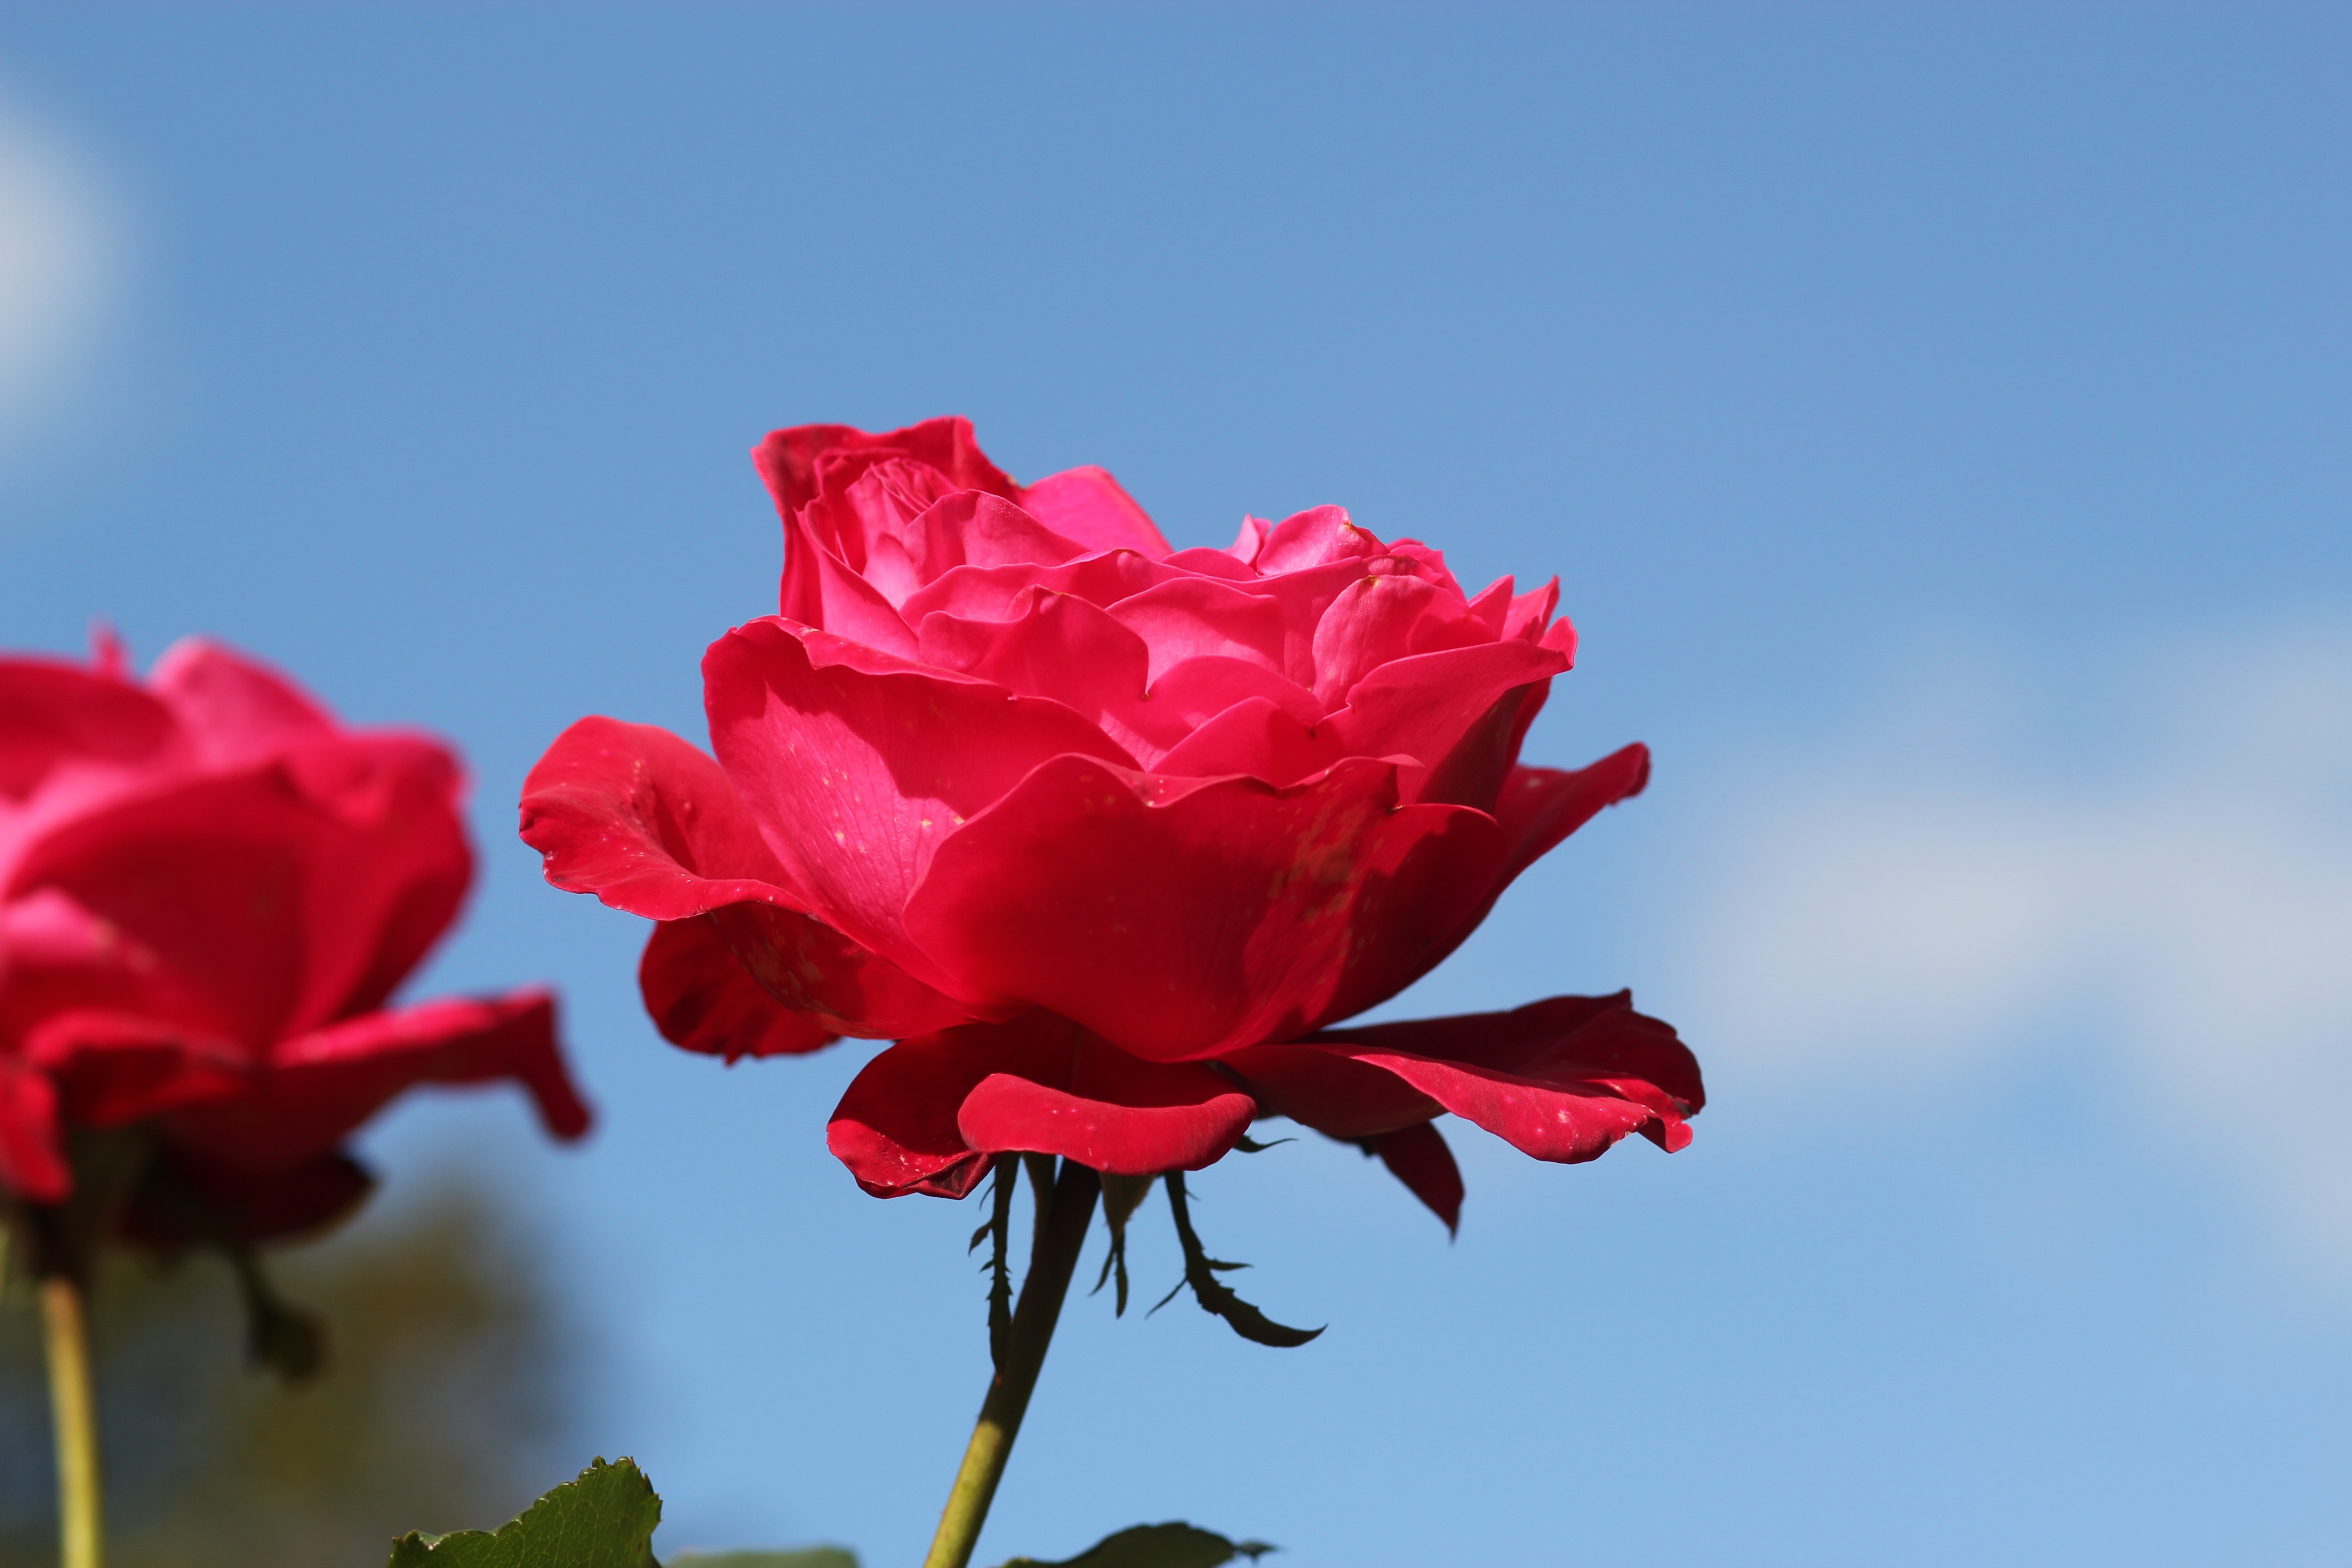 red rose at daytime